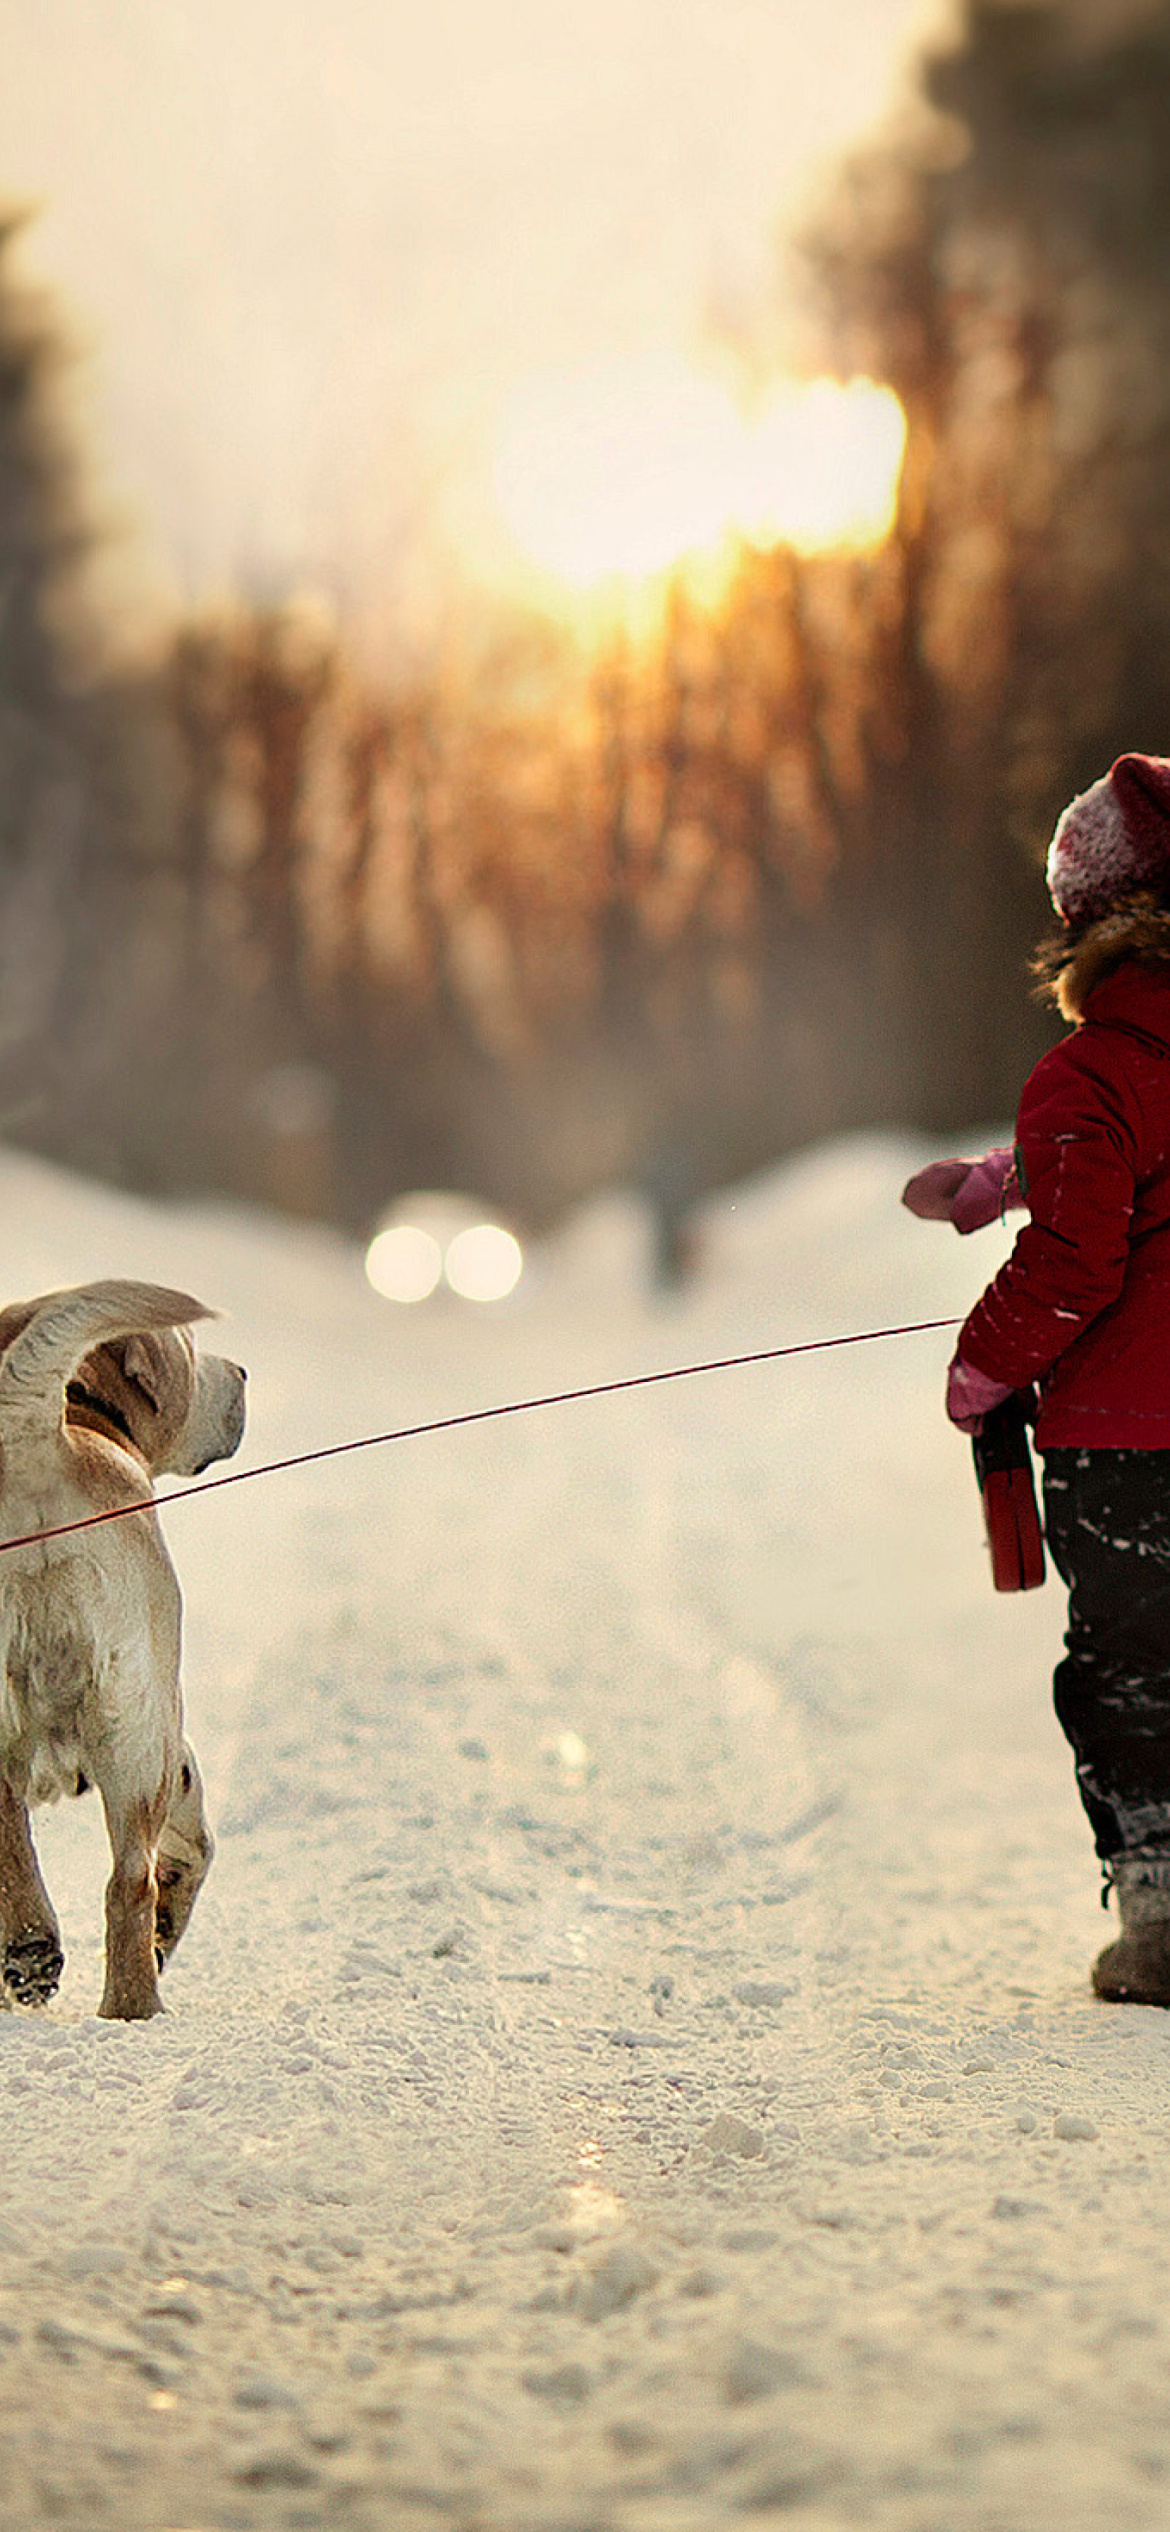 Обои Winter Walking with Dog 1170x2532